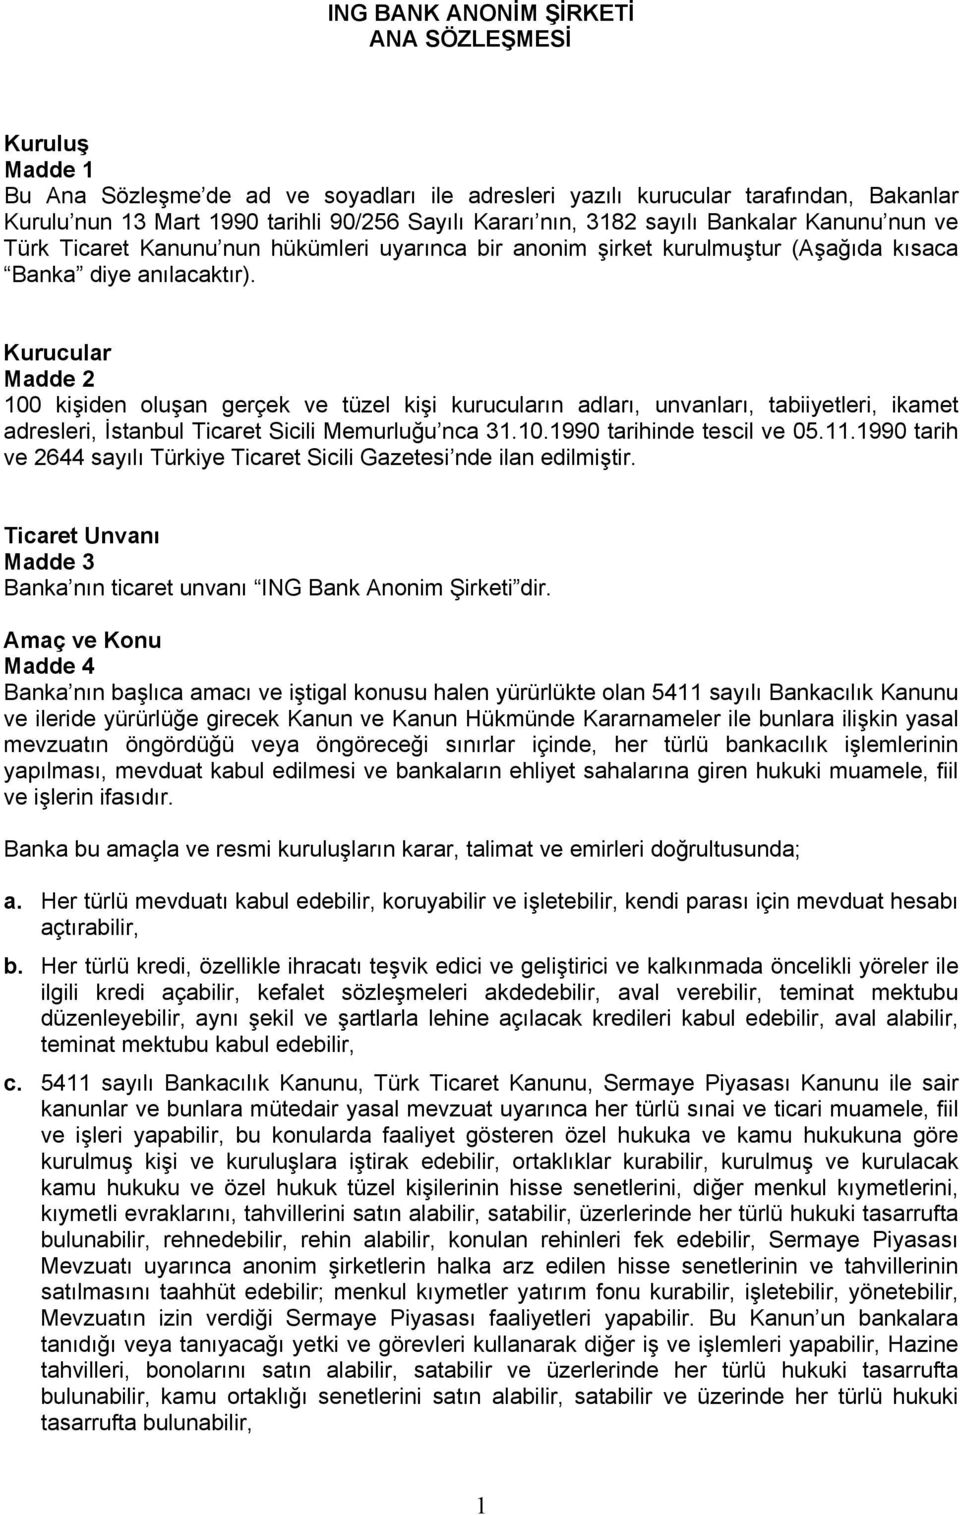 Kurucular Madde 2 100 kişiden oluşan gerçek ve tüzel kişi kurucuların adları, unvanları, tabiiyetleri, ikamet adresleri, İstanbul Ticaret Sicili Memurluğu nca 31.10.1990 tarihinde tescil ve 05.11.